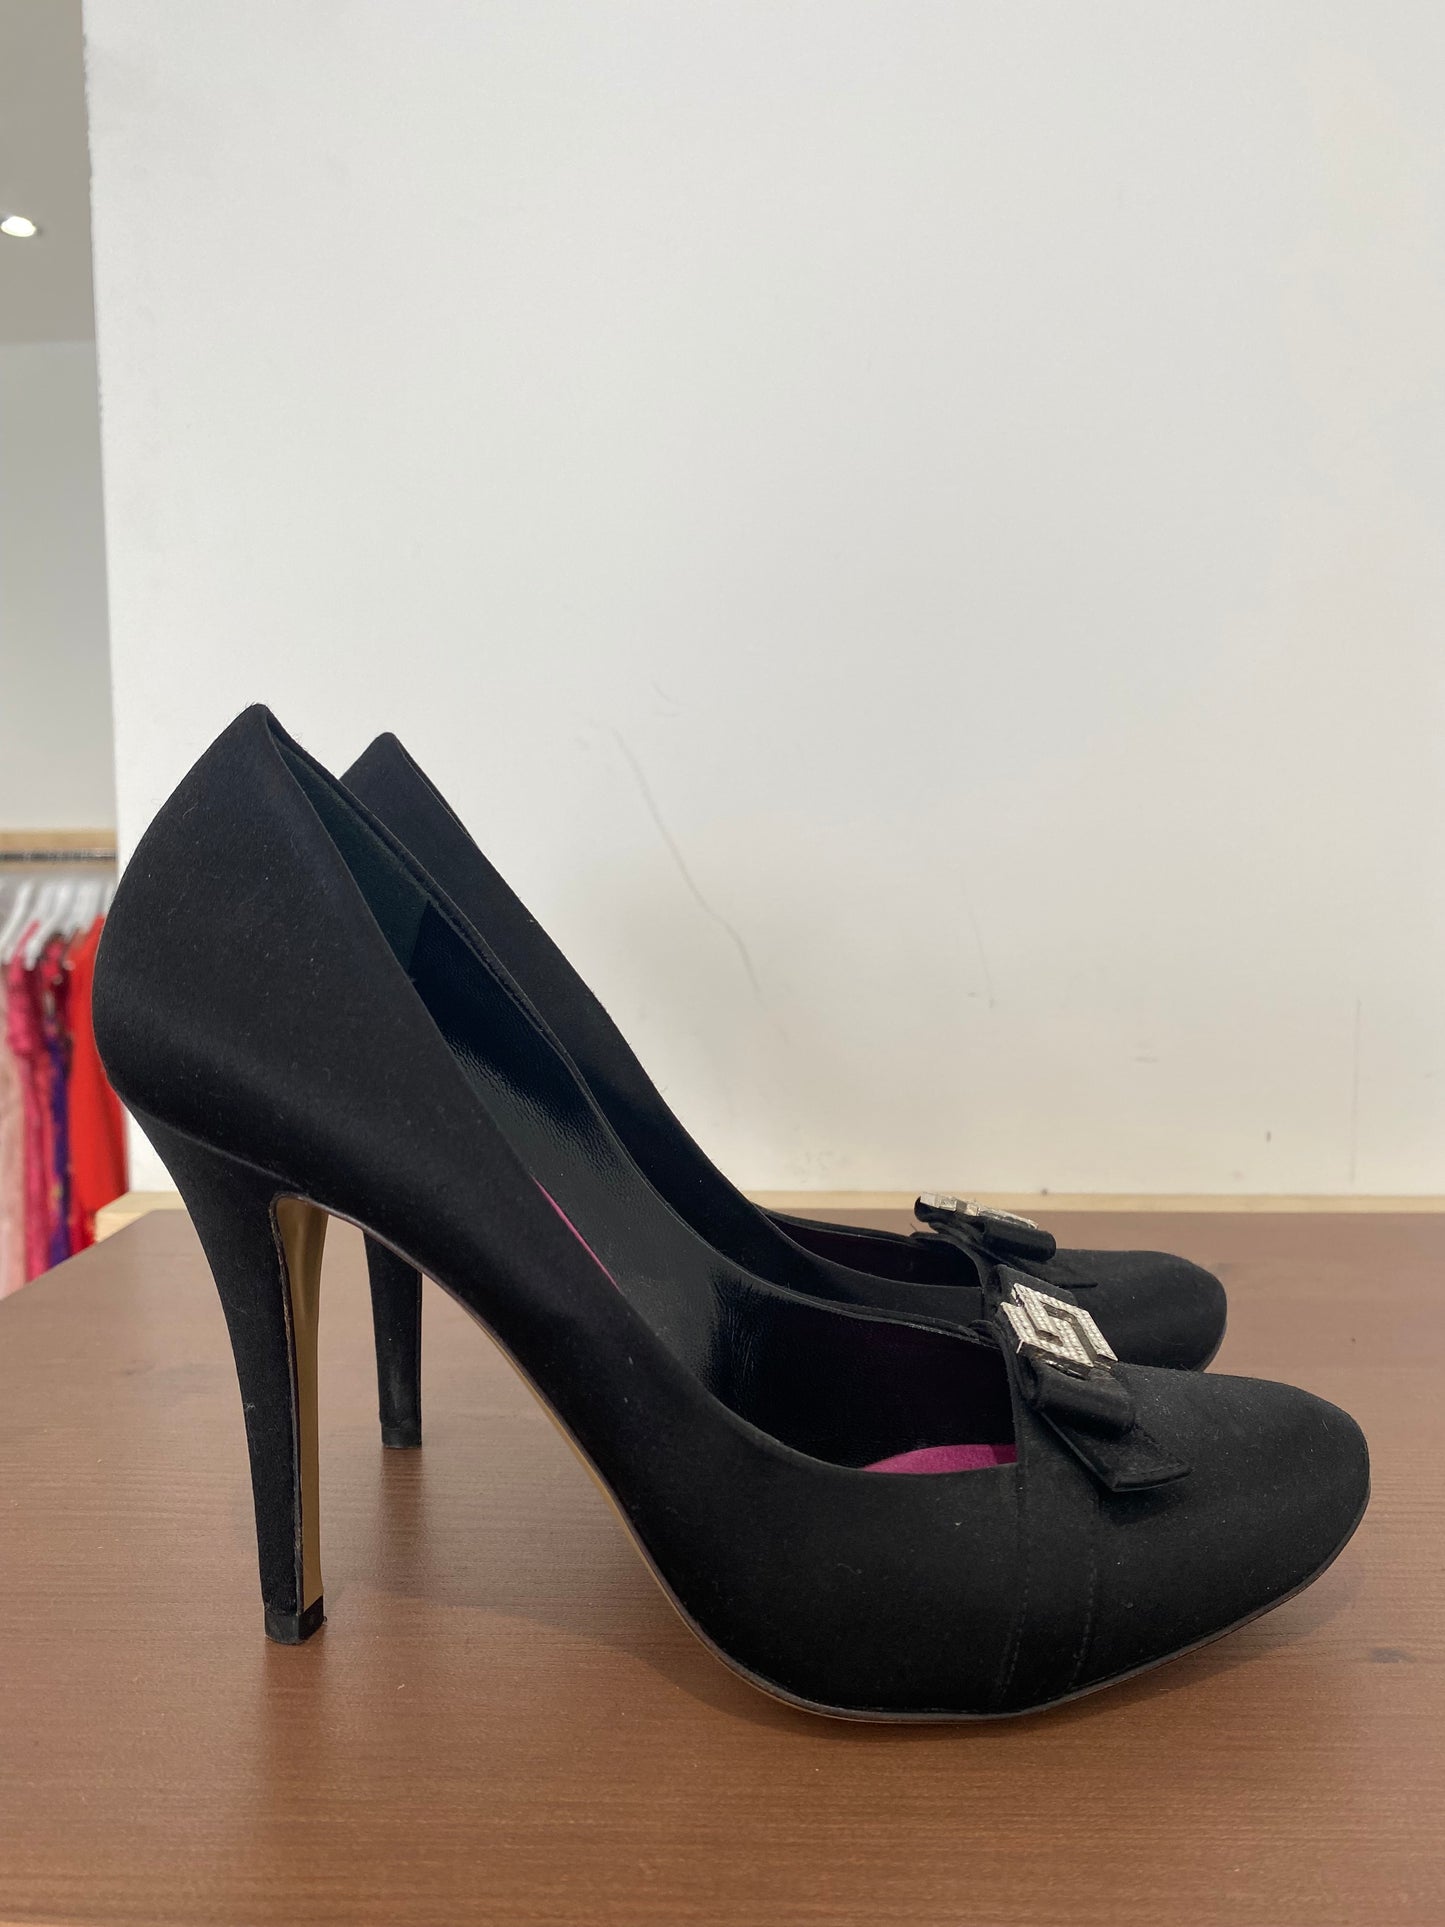 Karen Millen Black Fabric Shoes with Diamanté Detailing Size 4